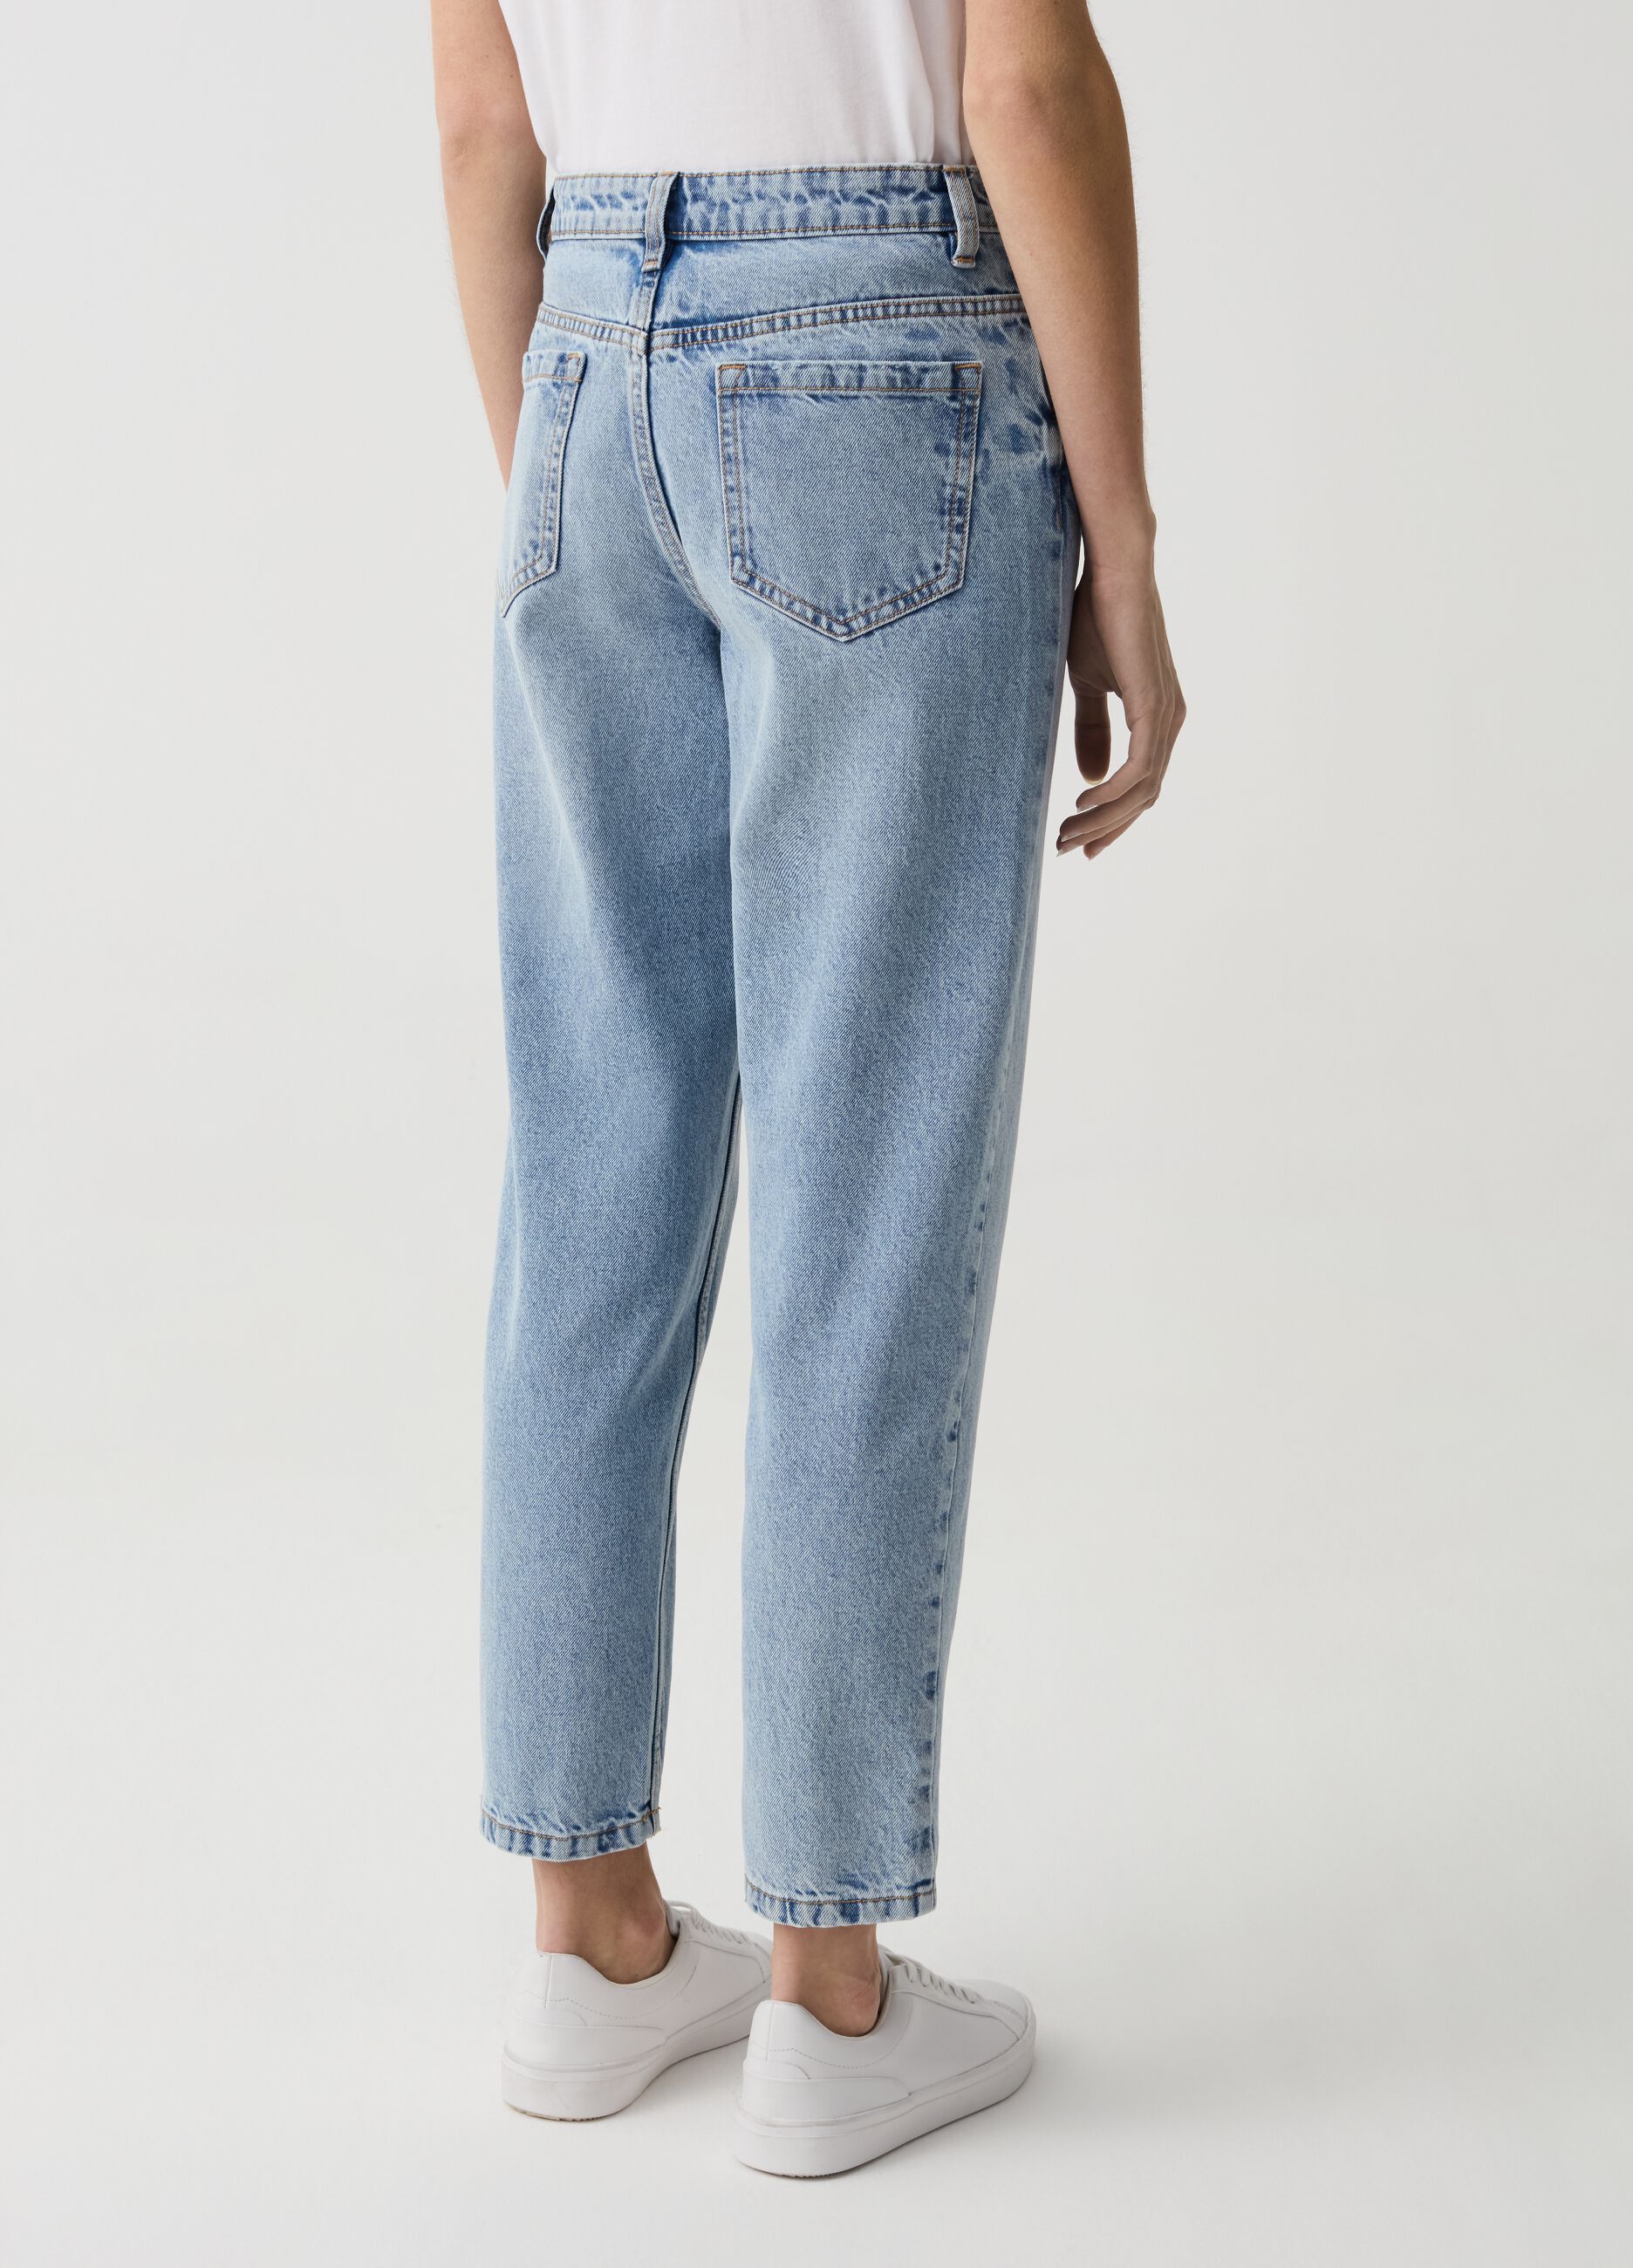 Mum-fit crop jeans